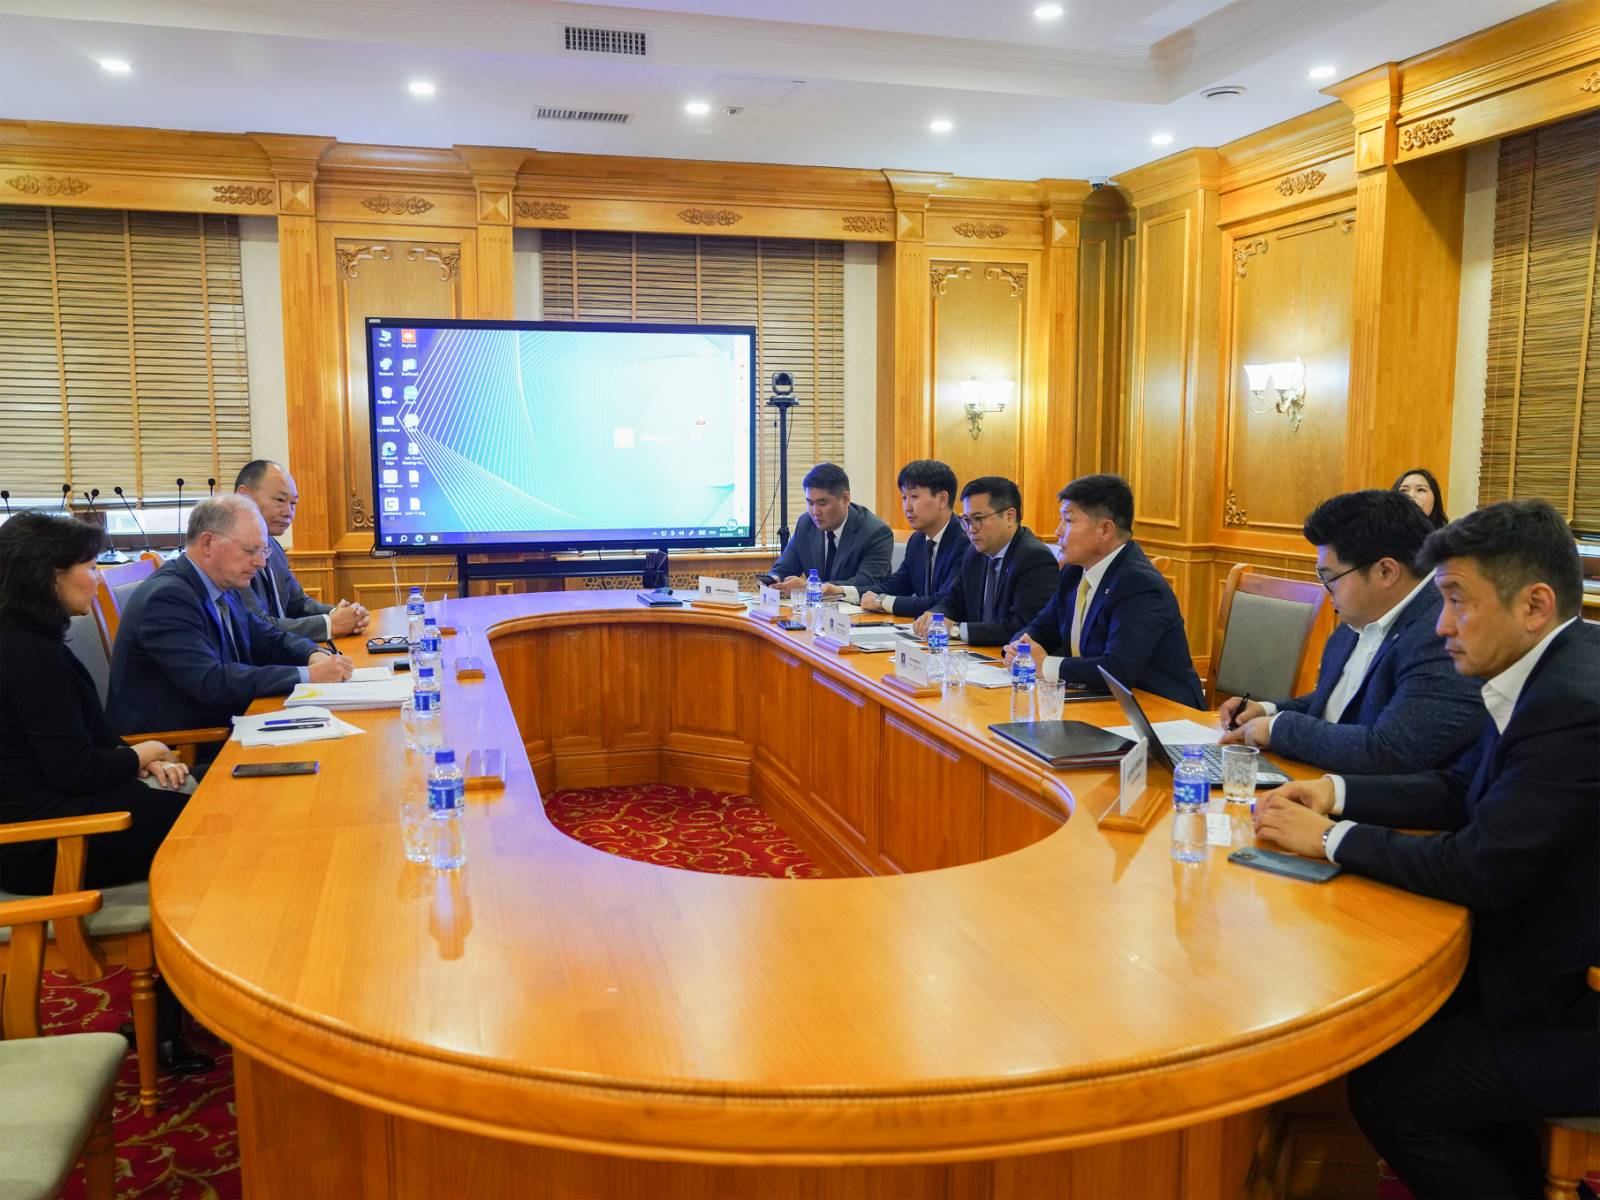 Х.Нямбаатар сайд “Орано групп”-ийн Монгол дахь захиралтай уулзлаа